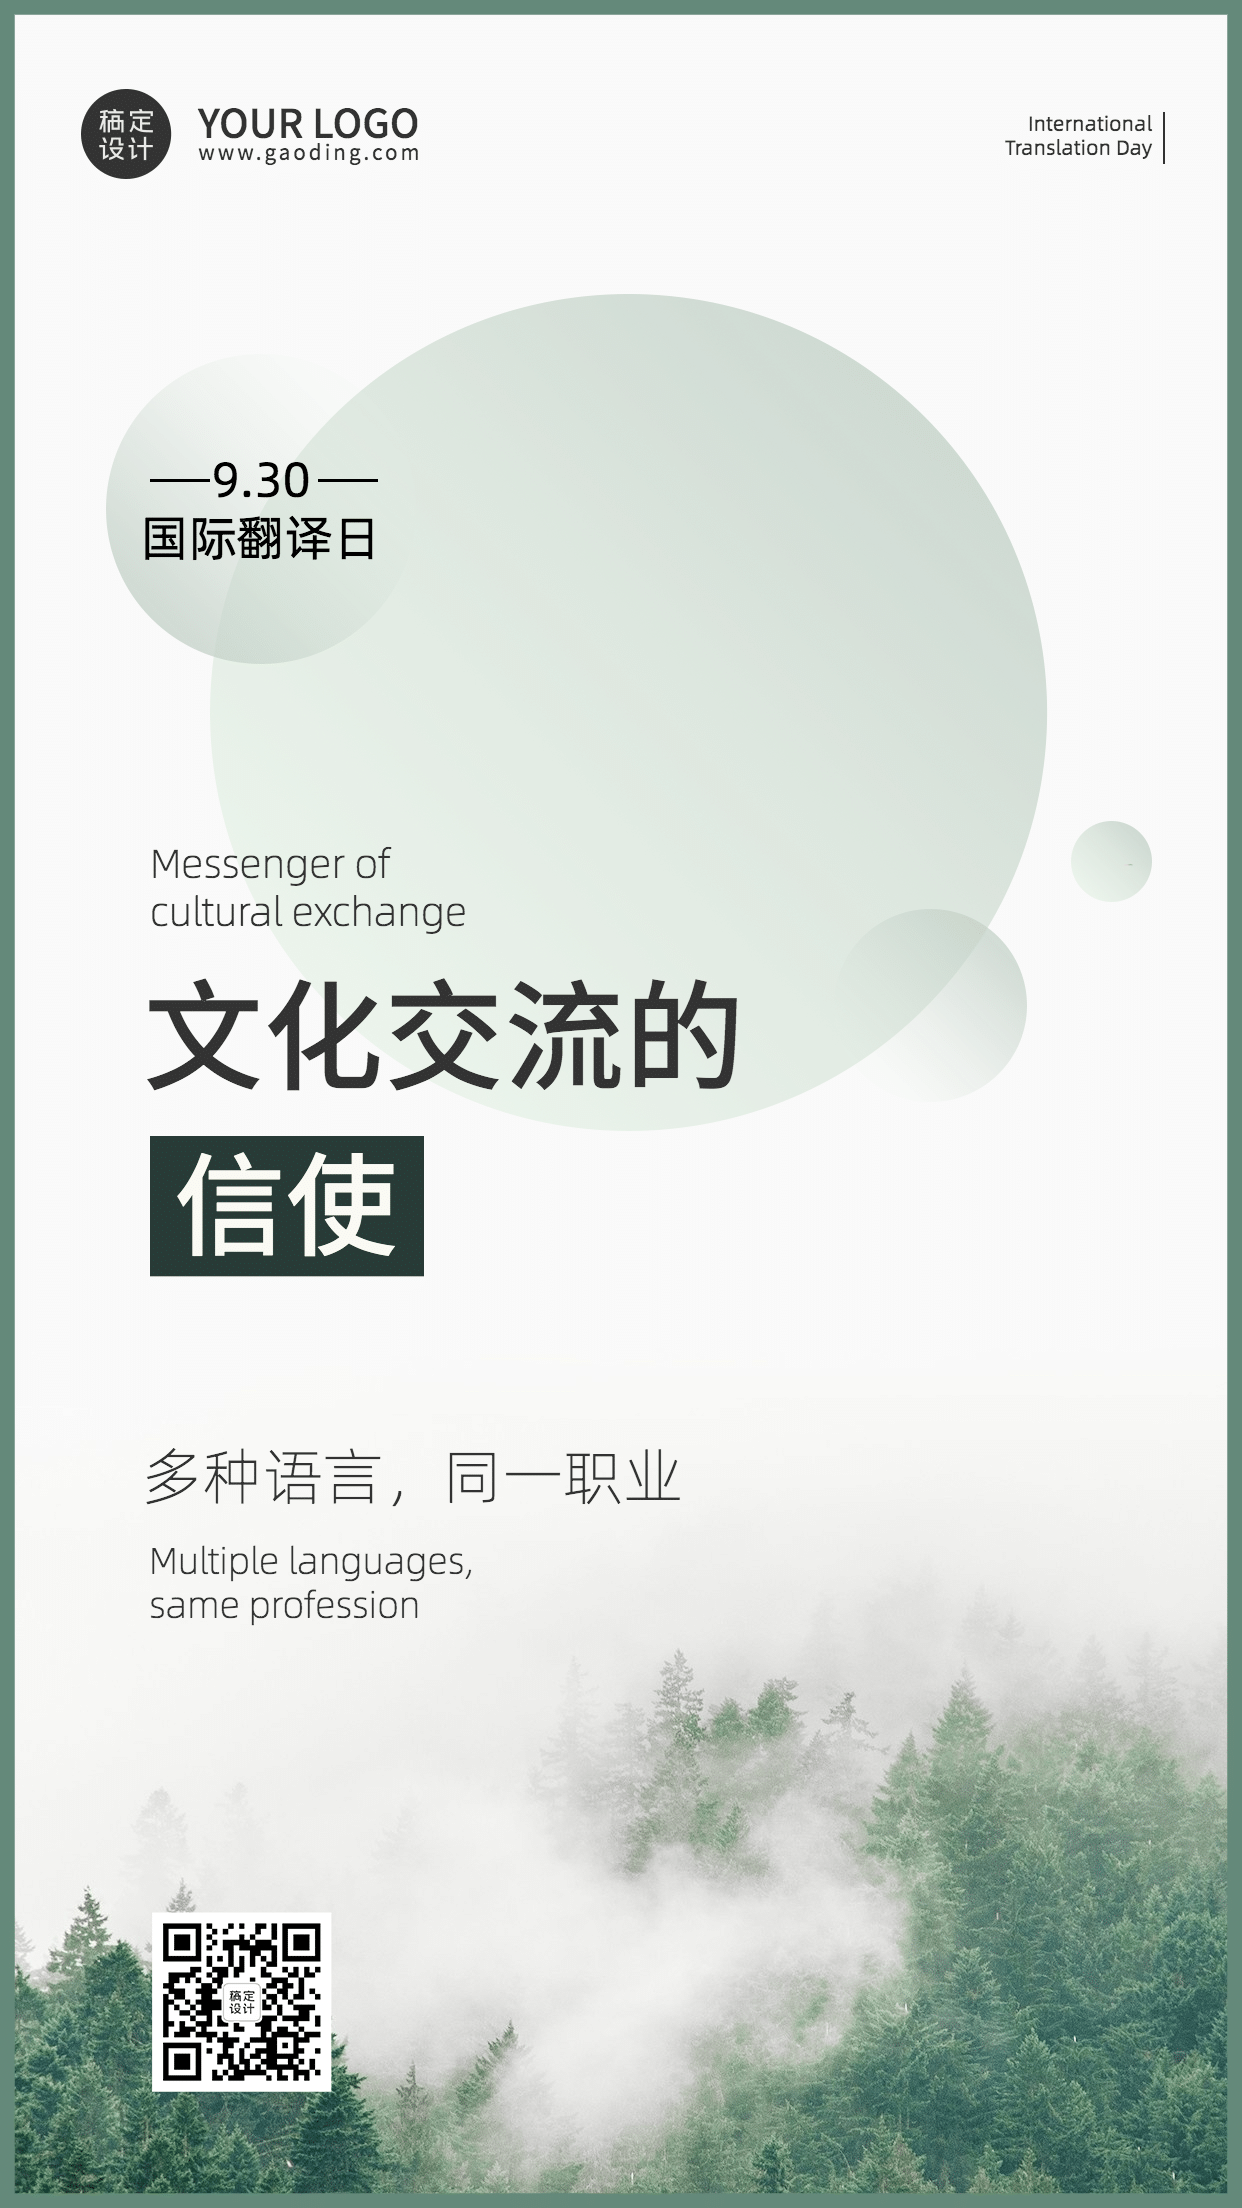 国际翻译日文化文学宣传实景海报